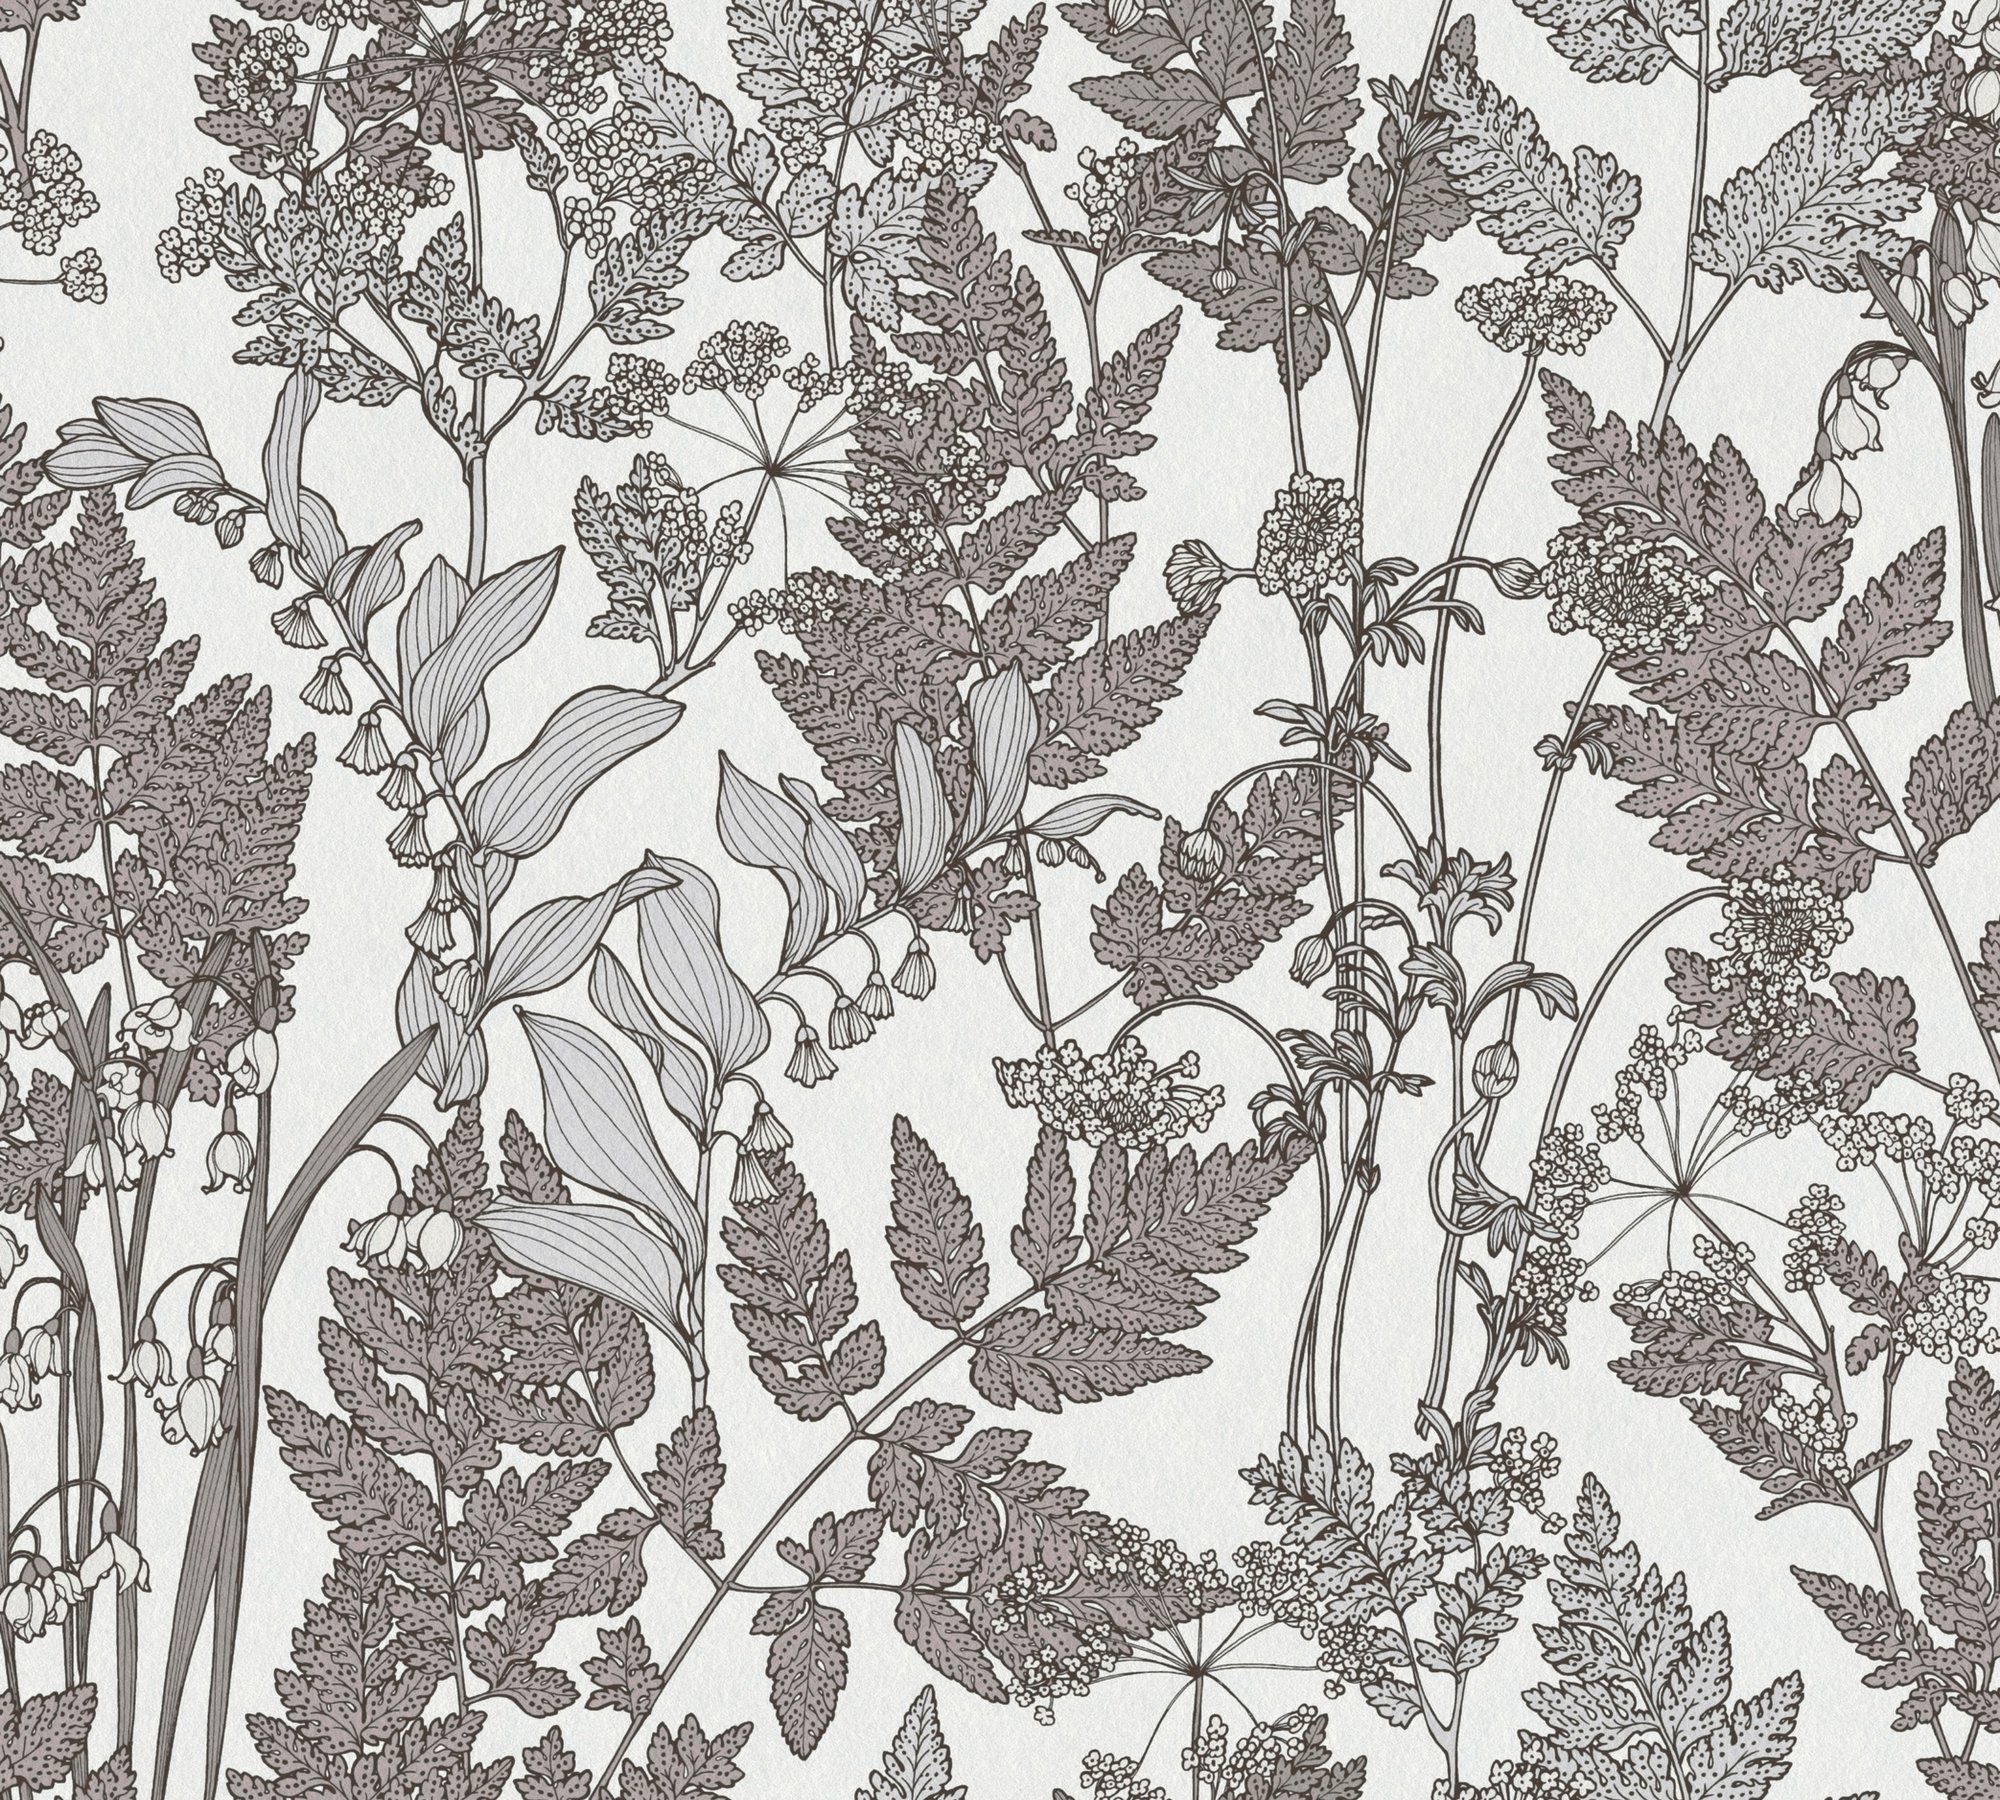 A.S. Blumen Paper Vliestapete botanisch, glatt, floral, Tapete Impression, Floral Architects Création grau/weiß